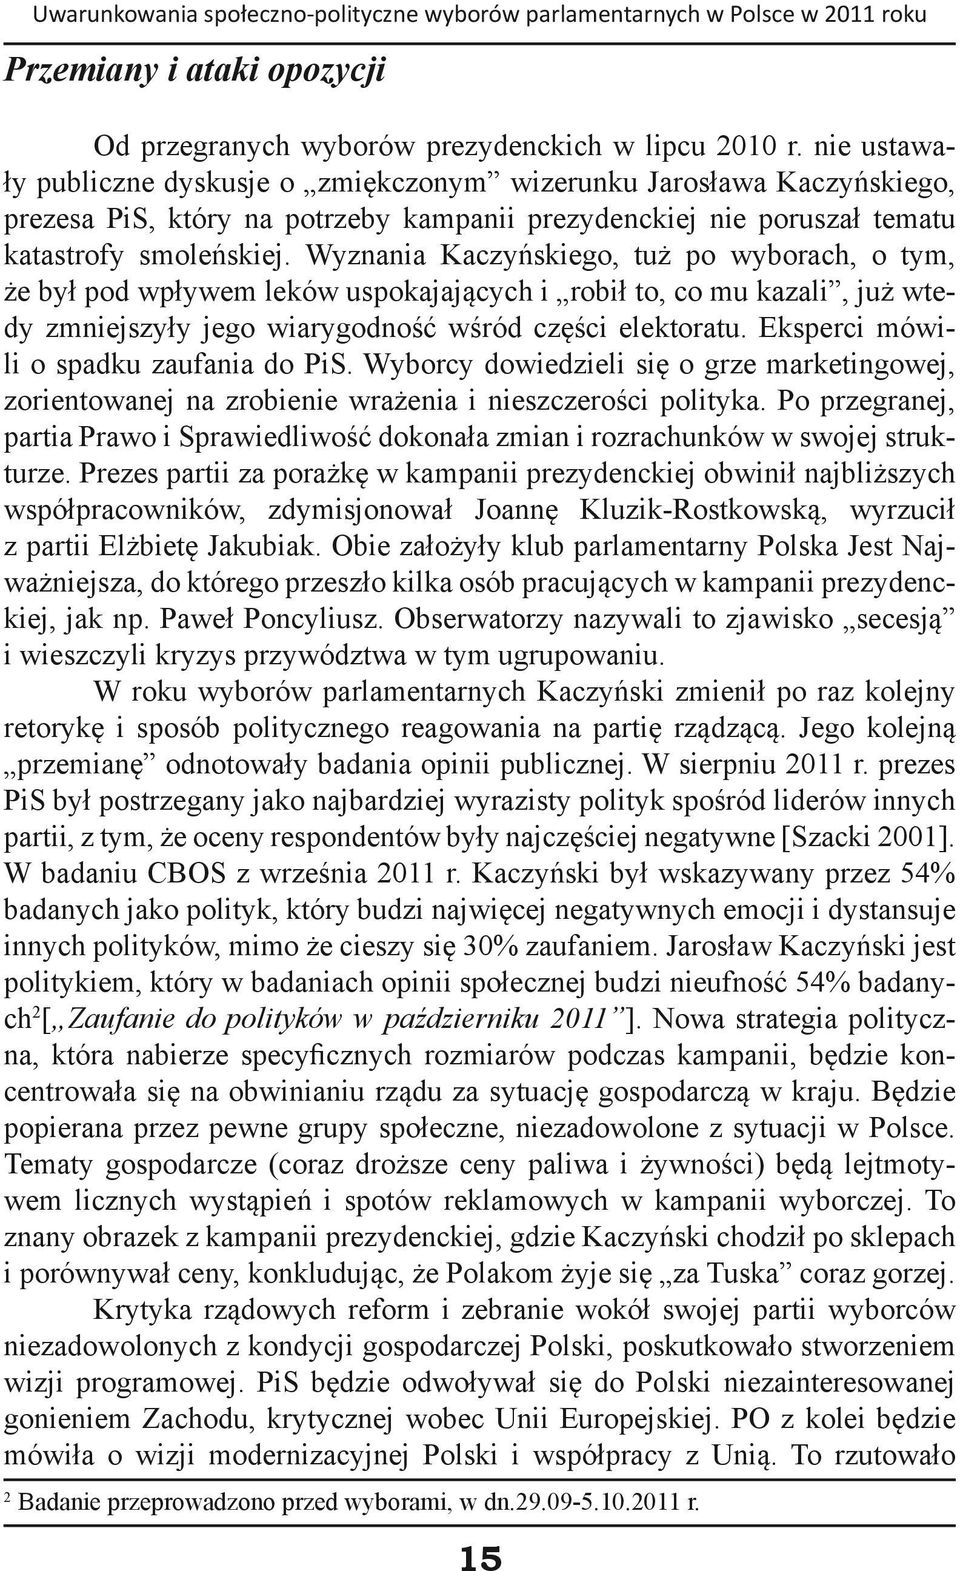 Wyznania Kaczyńskiego, tuż po wyborach, o tym, że był pod wpływem leków uspokajających i robił to, co mu kazali, już wtedy zmniejszyły jego wiarygodność wśród części elektoratu.